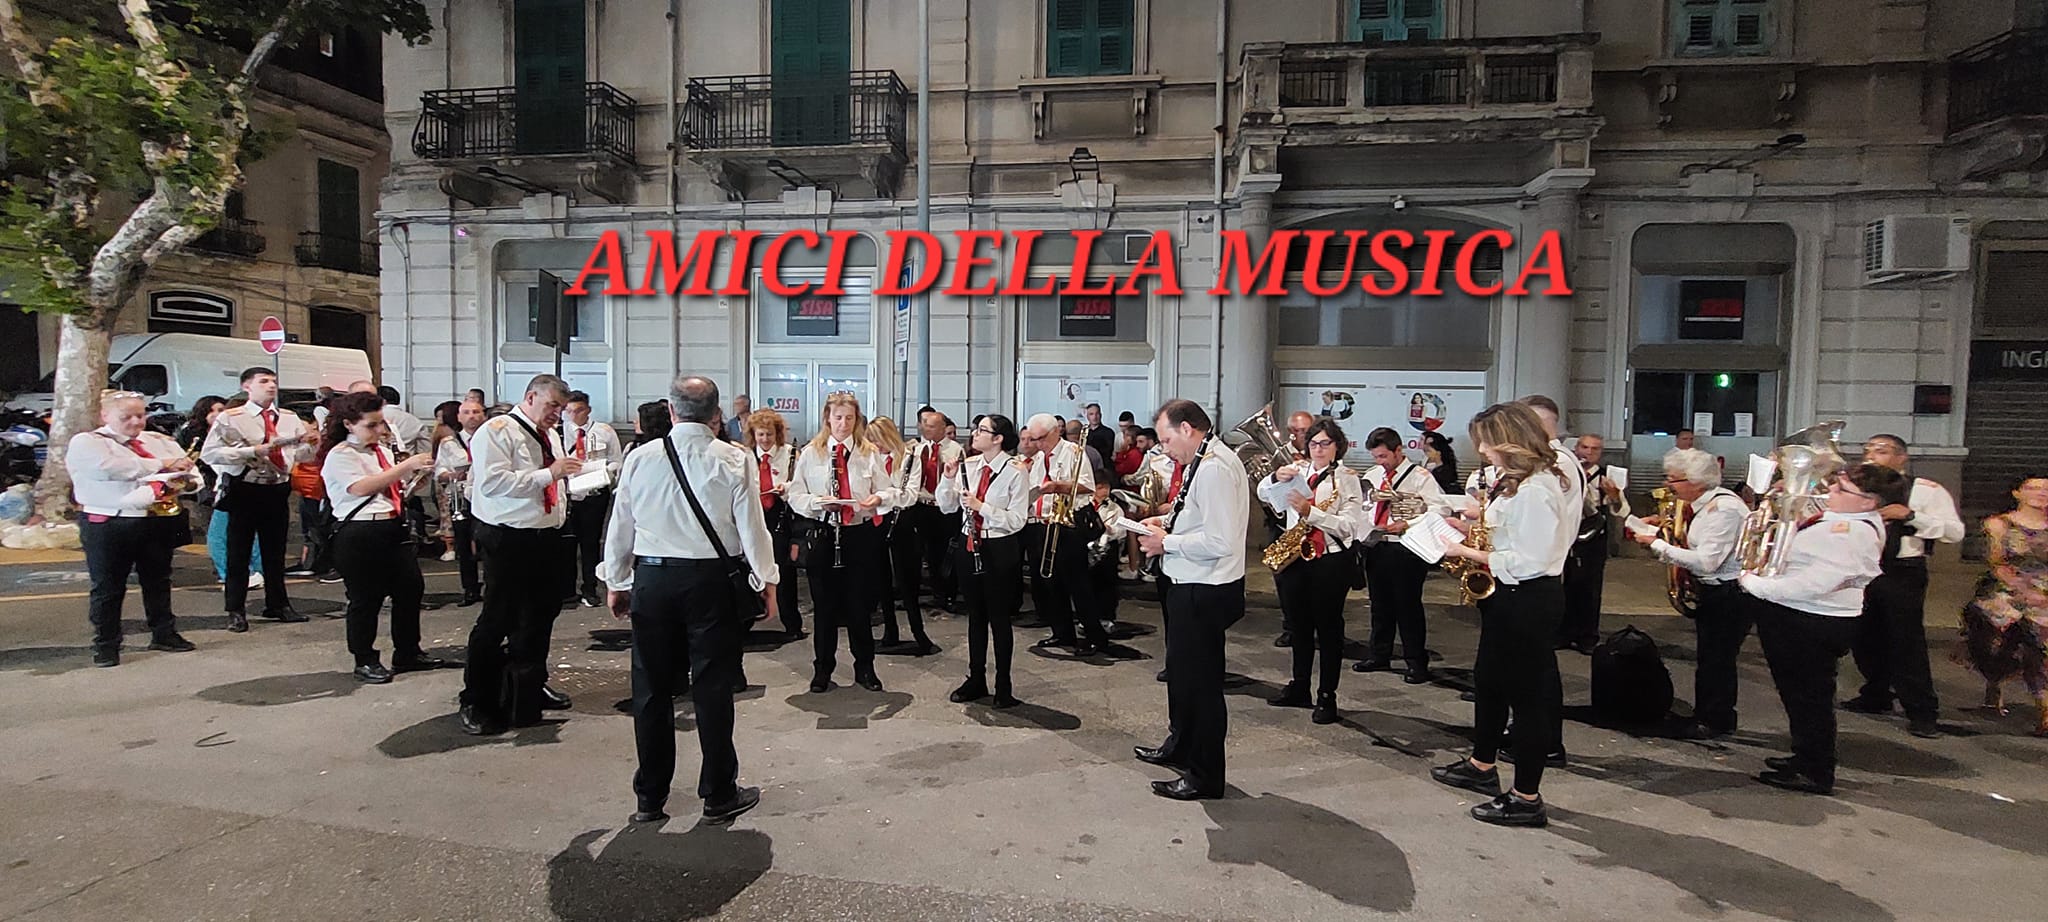 Associazione Musicale Bandistica “AMICI DELLA MUSICA LARDERIA” Messina